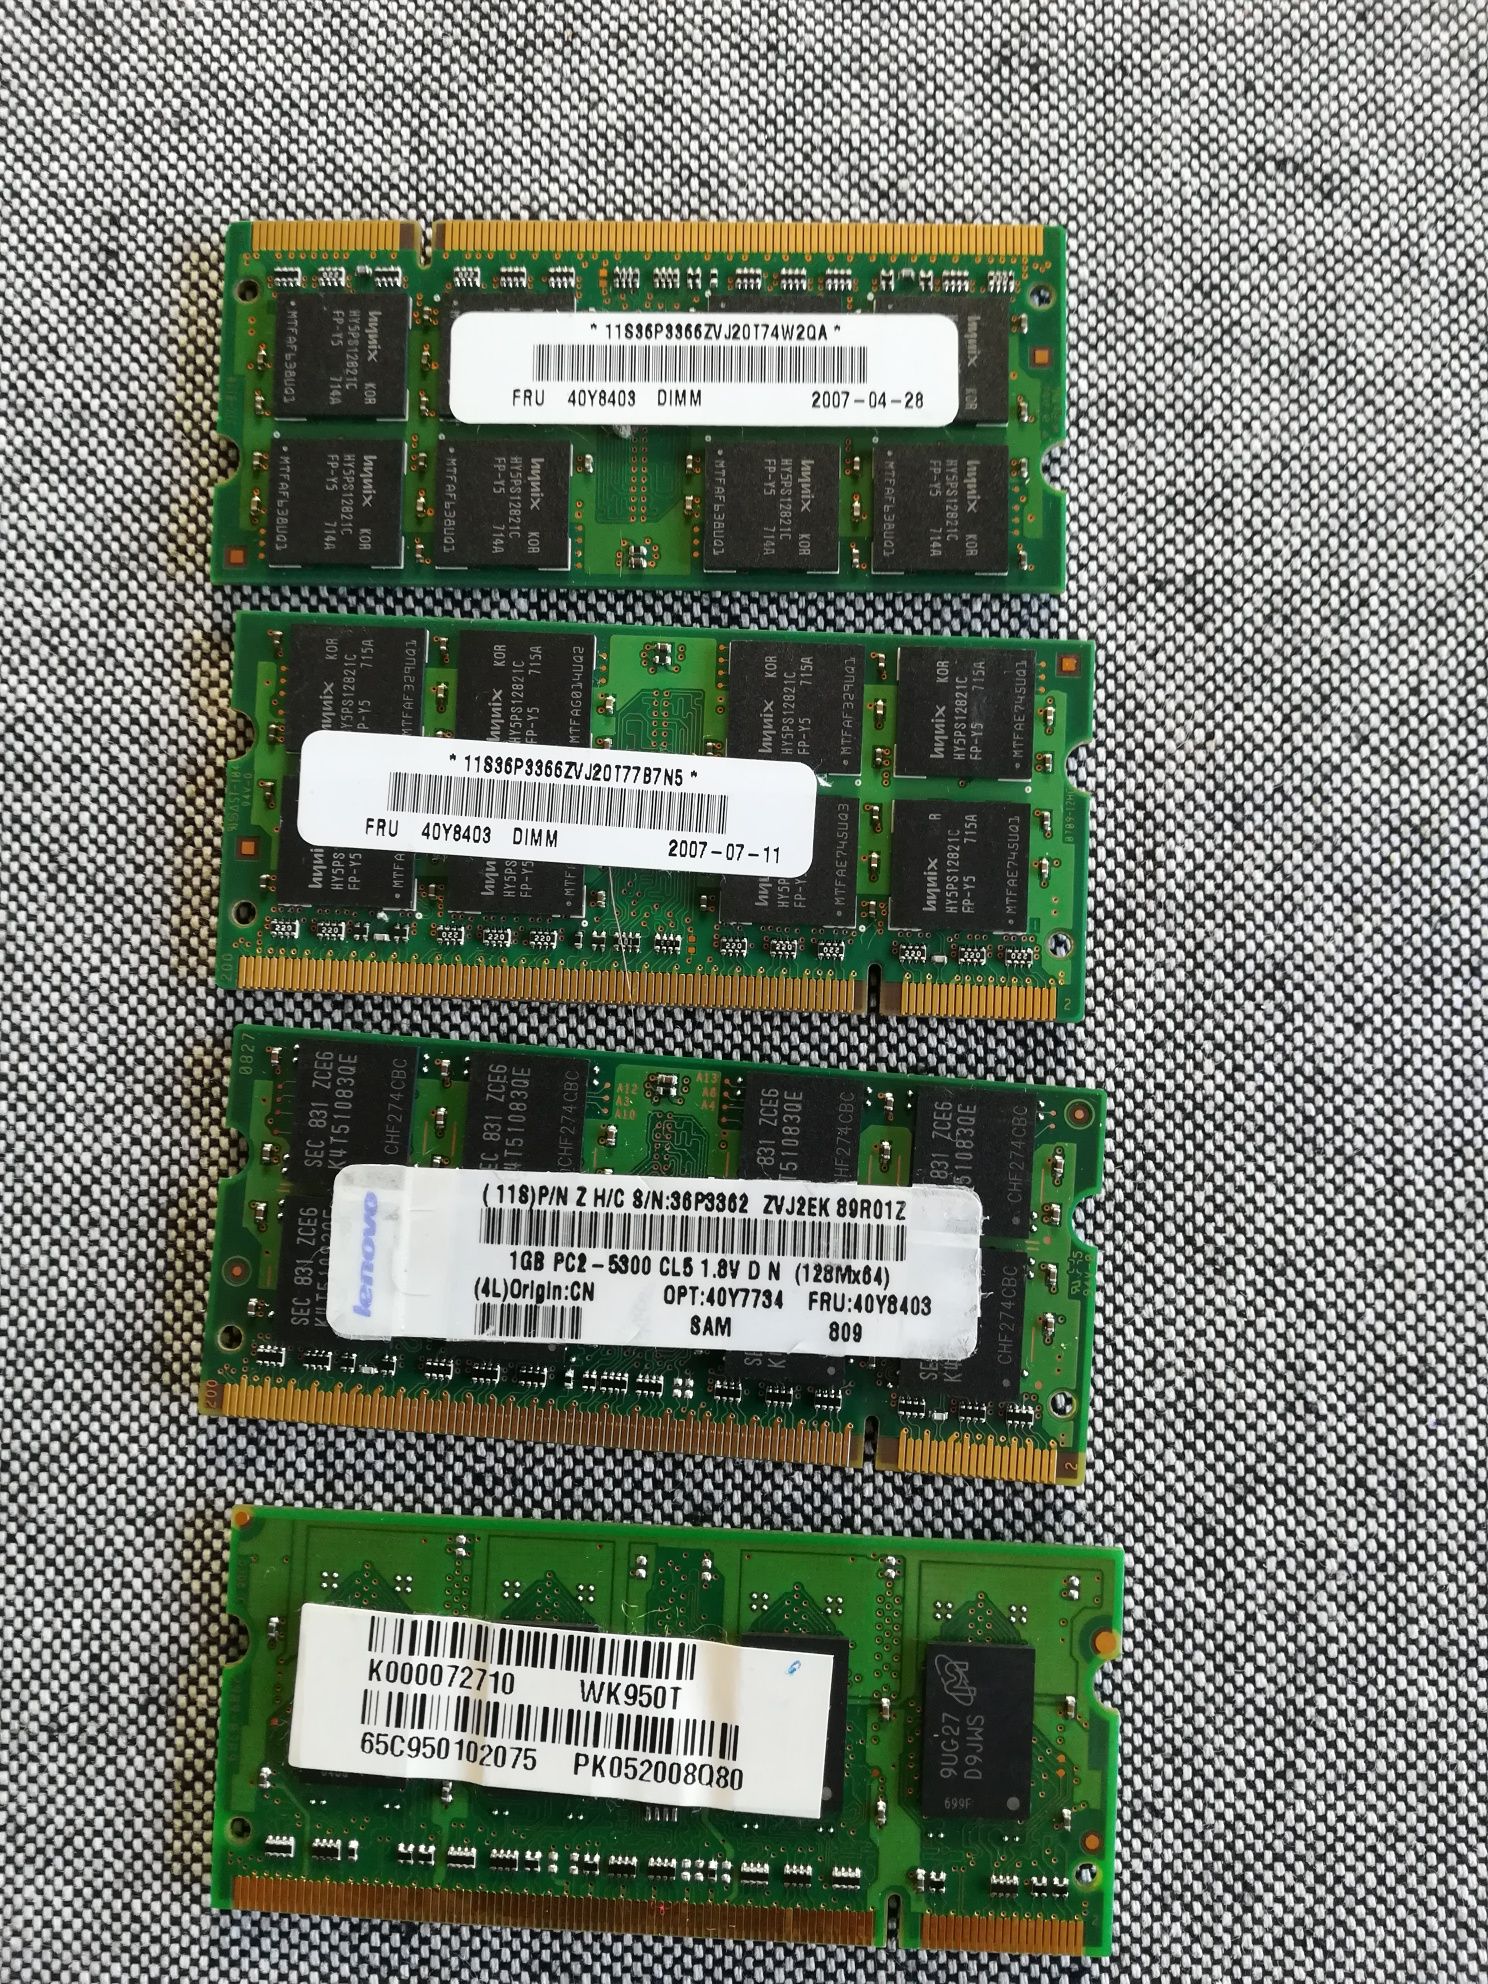 Memorias RAM portatil